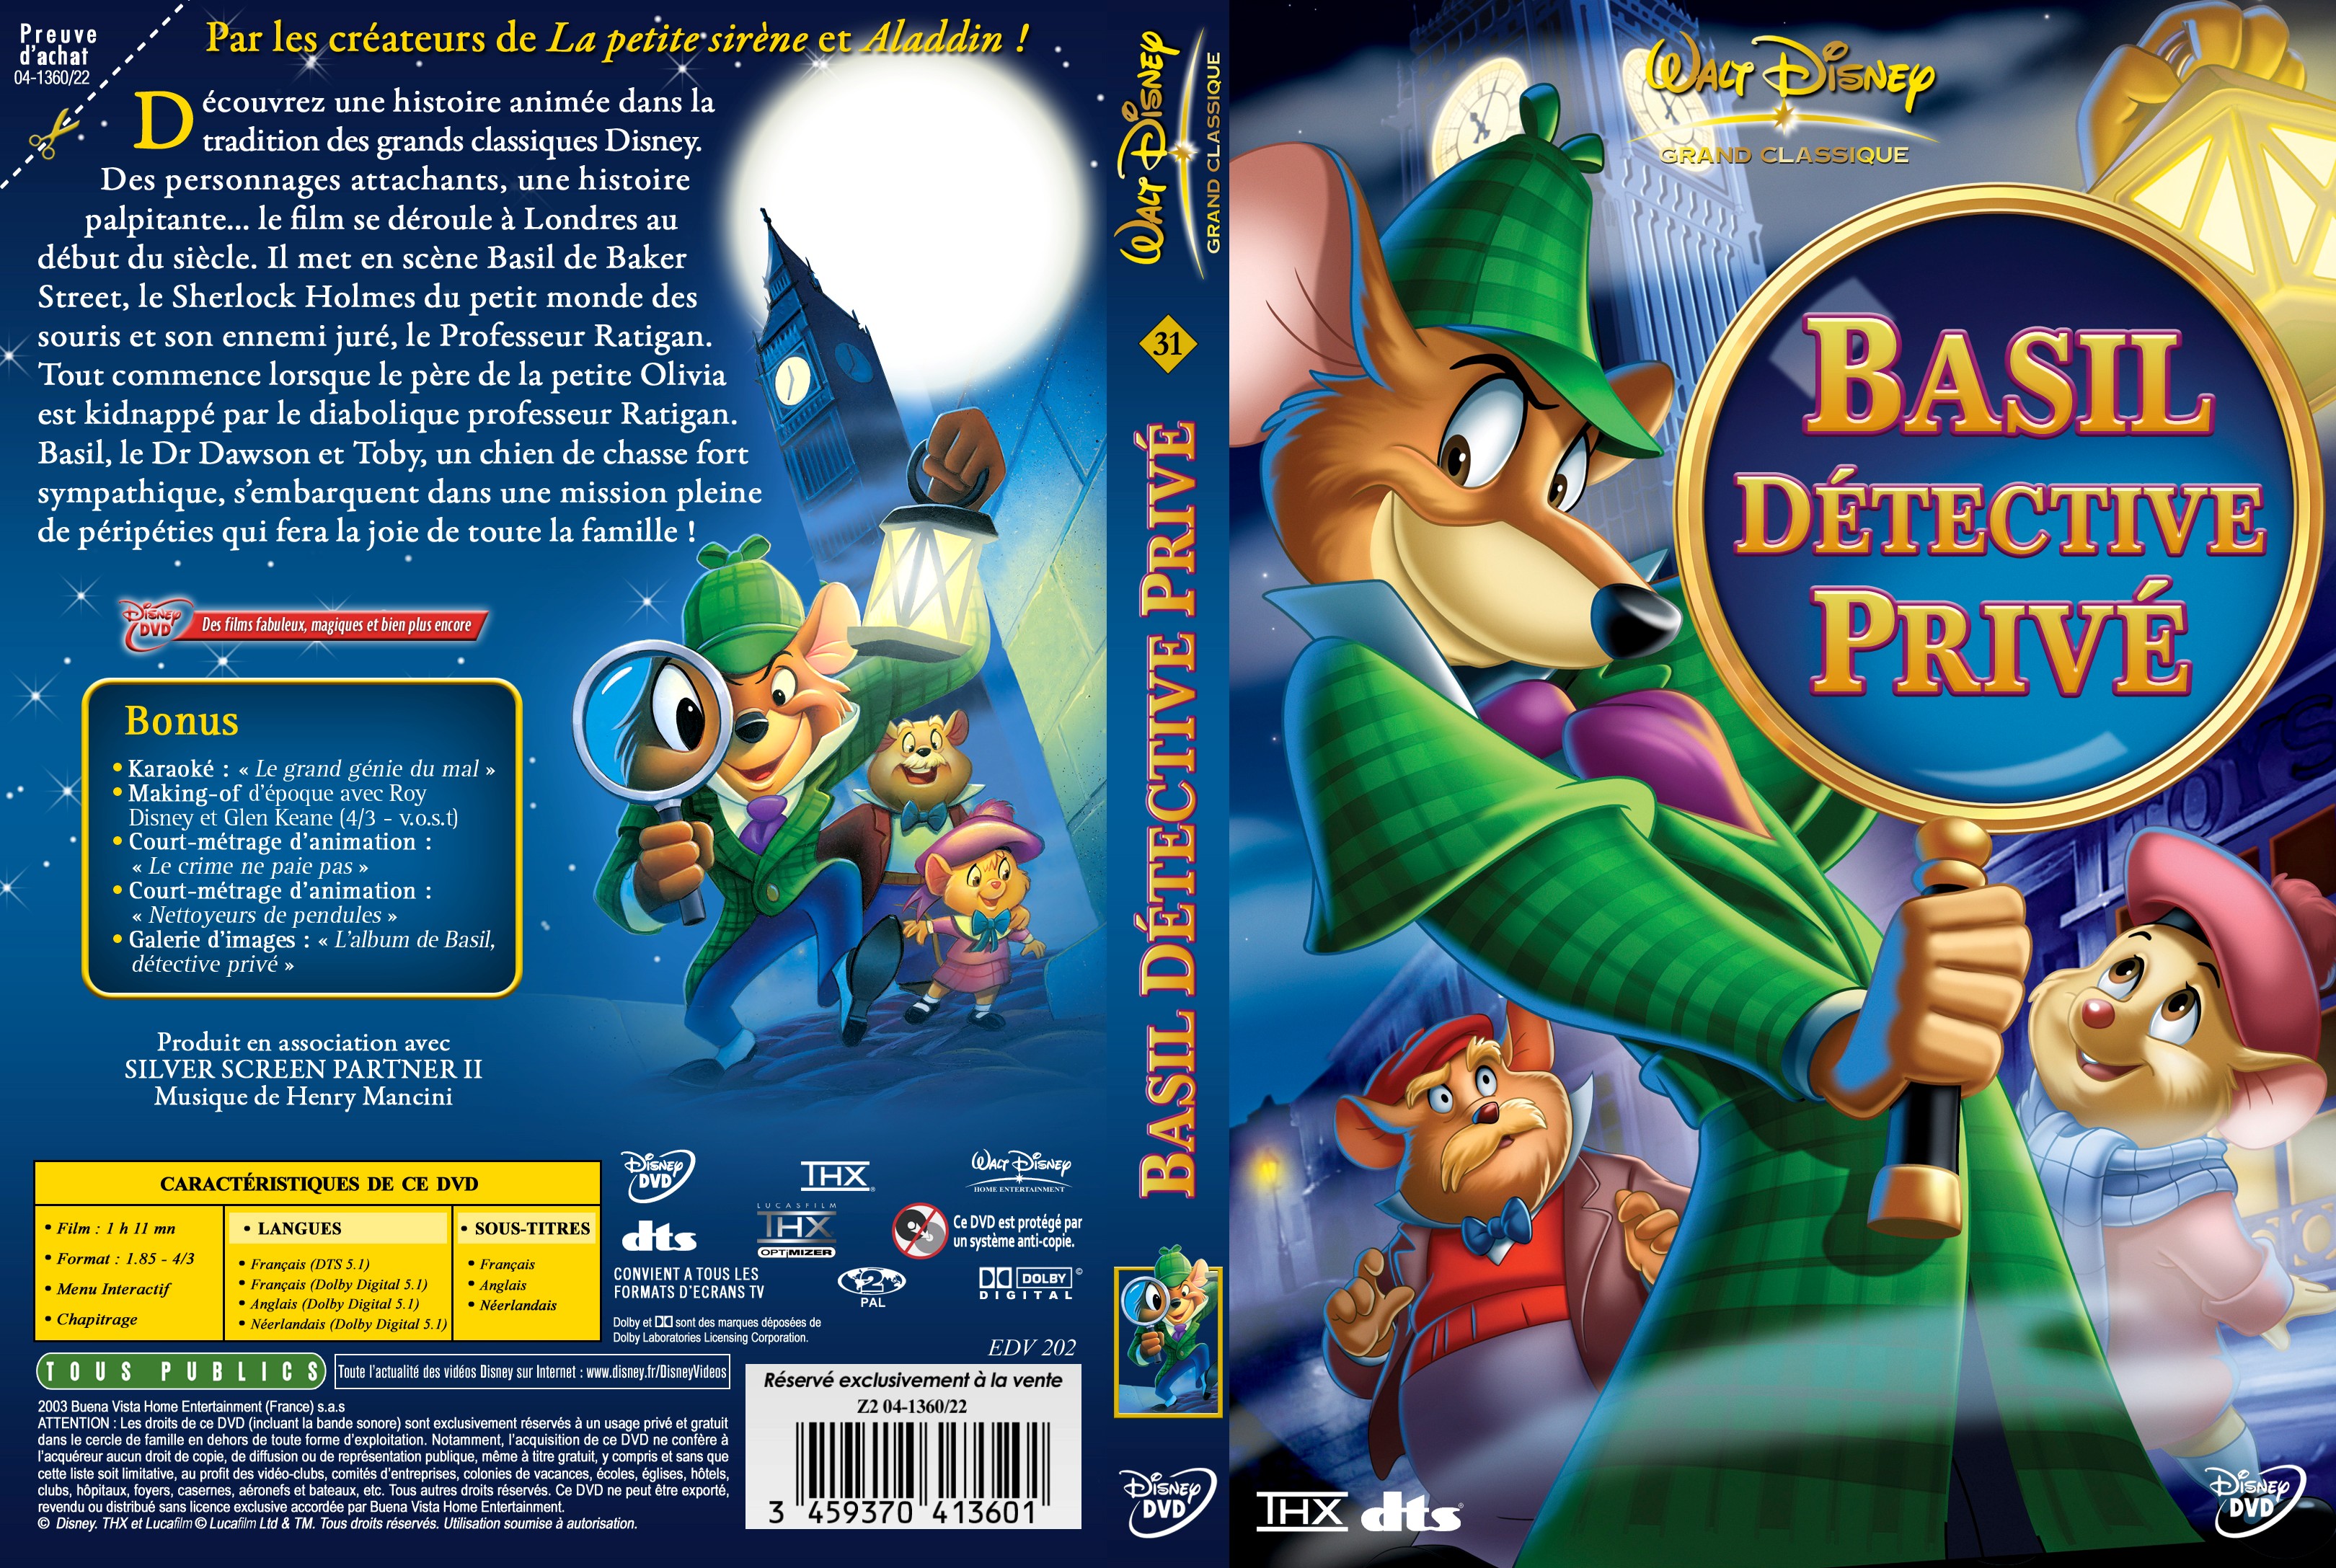 Jaquette DVD Basil dtective priv v3